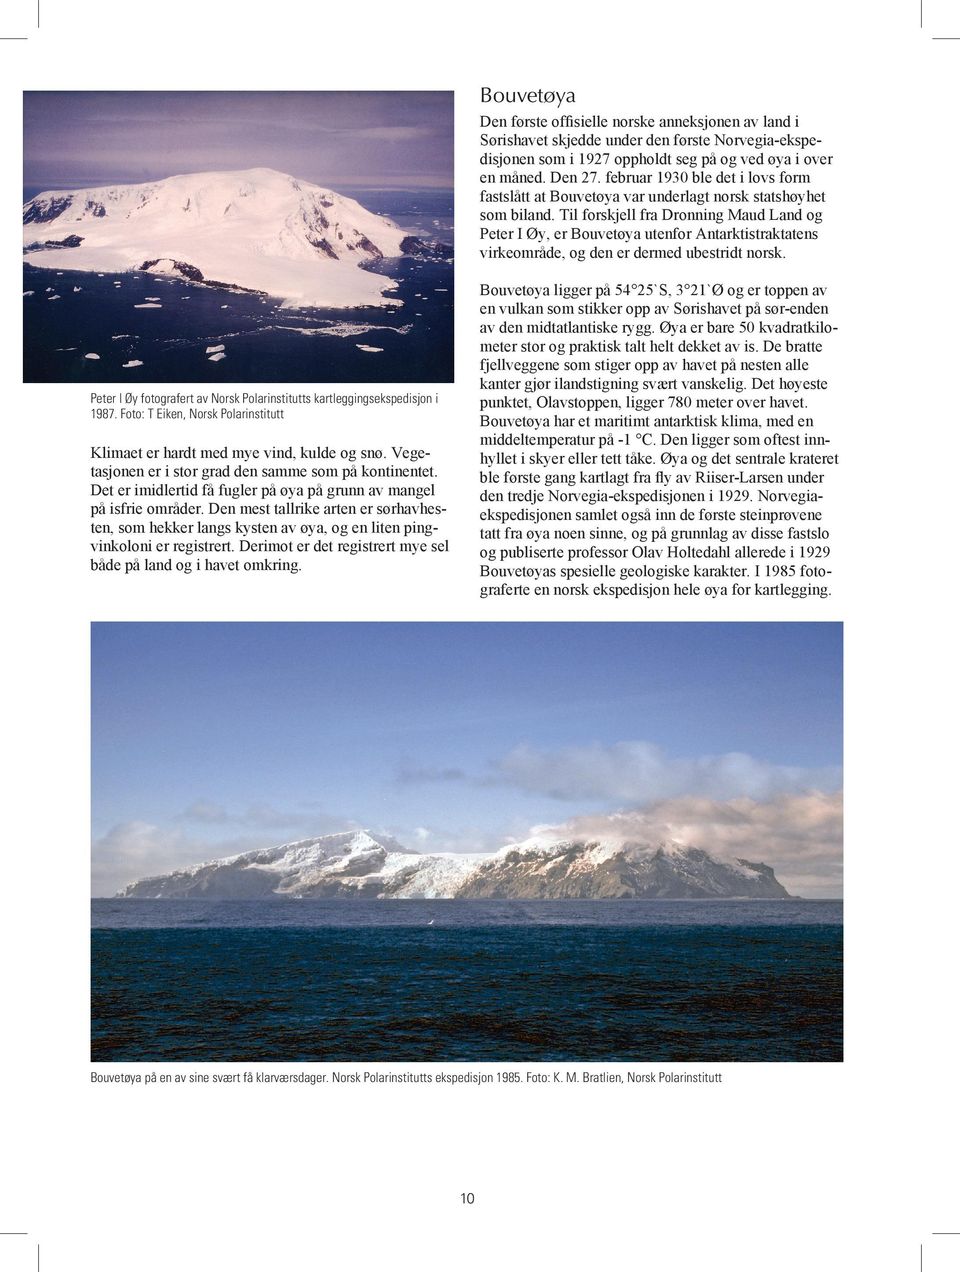 Til forskjell fra Dronning Maud Land og Peter I Øy, er Bouvetøya utenfor Antarktistraktatens virkeområde, og den er dermed ubestridt norsk.